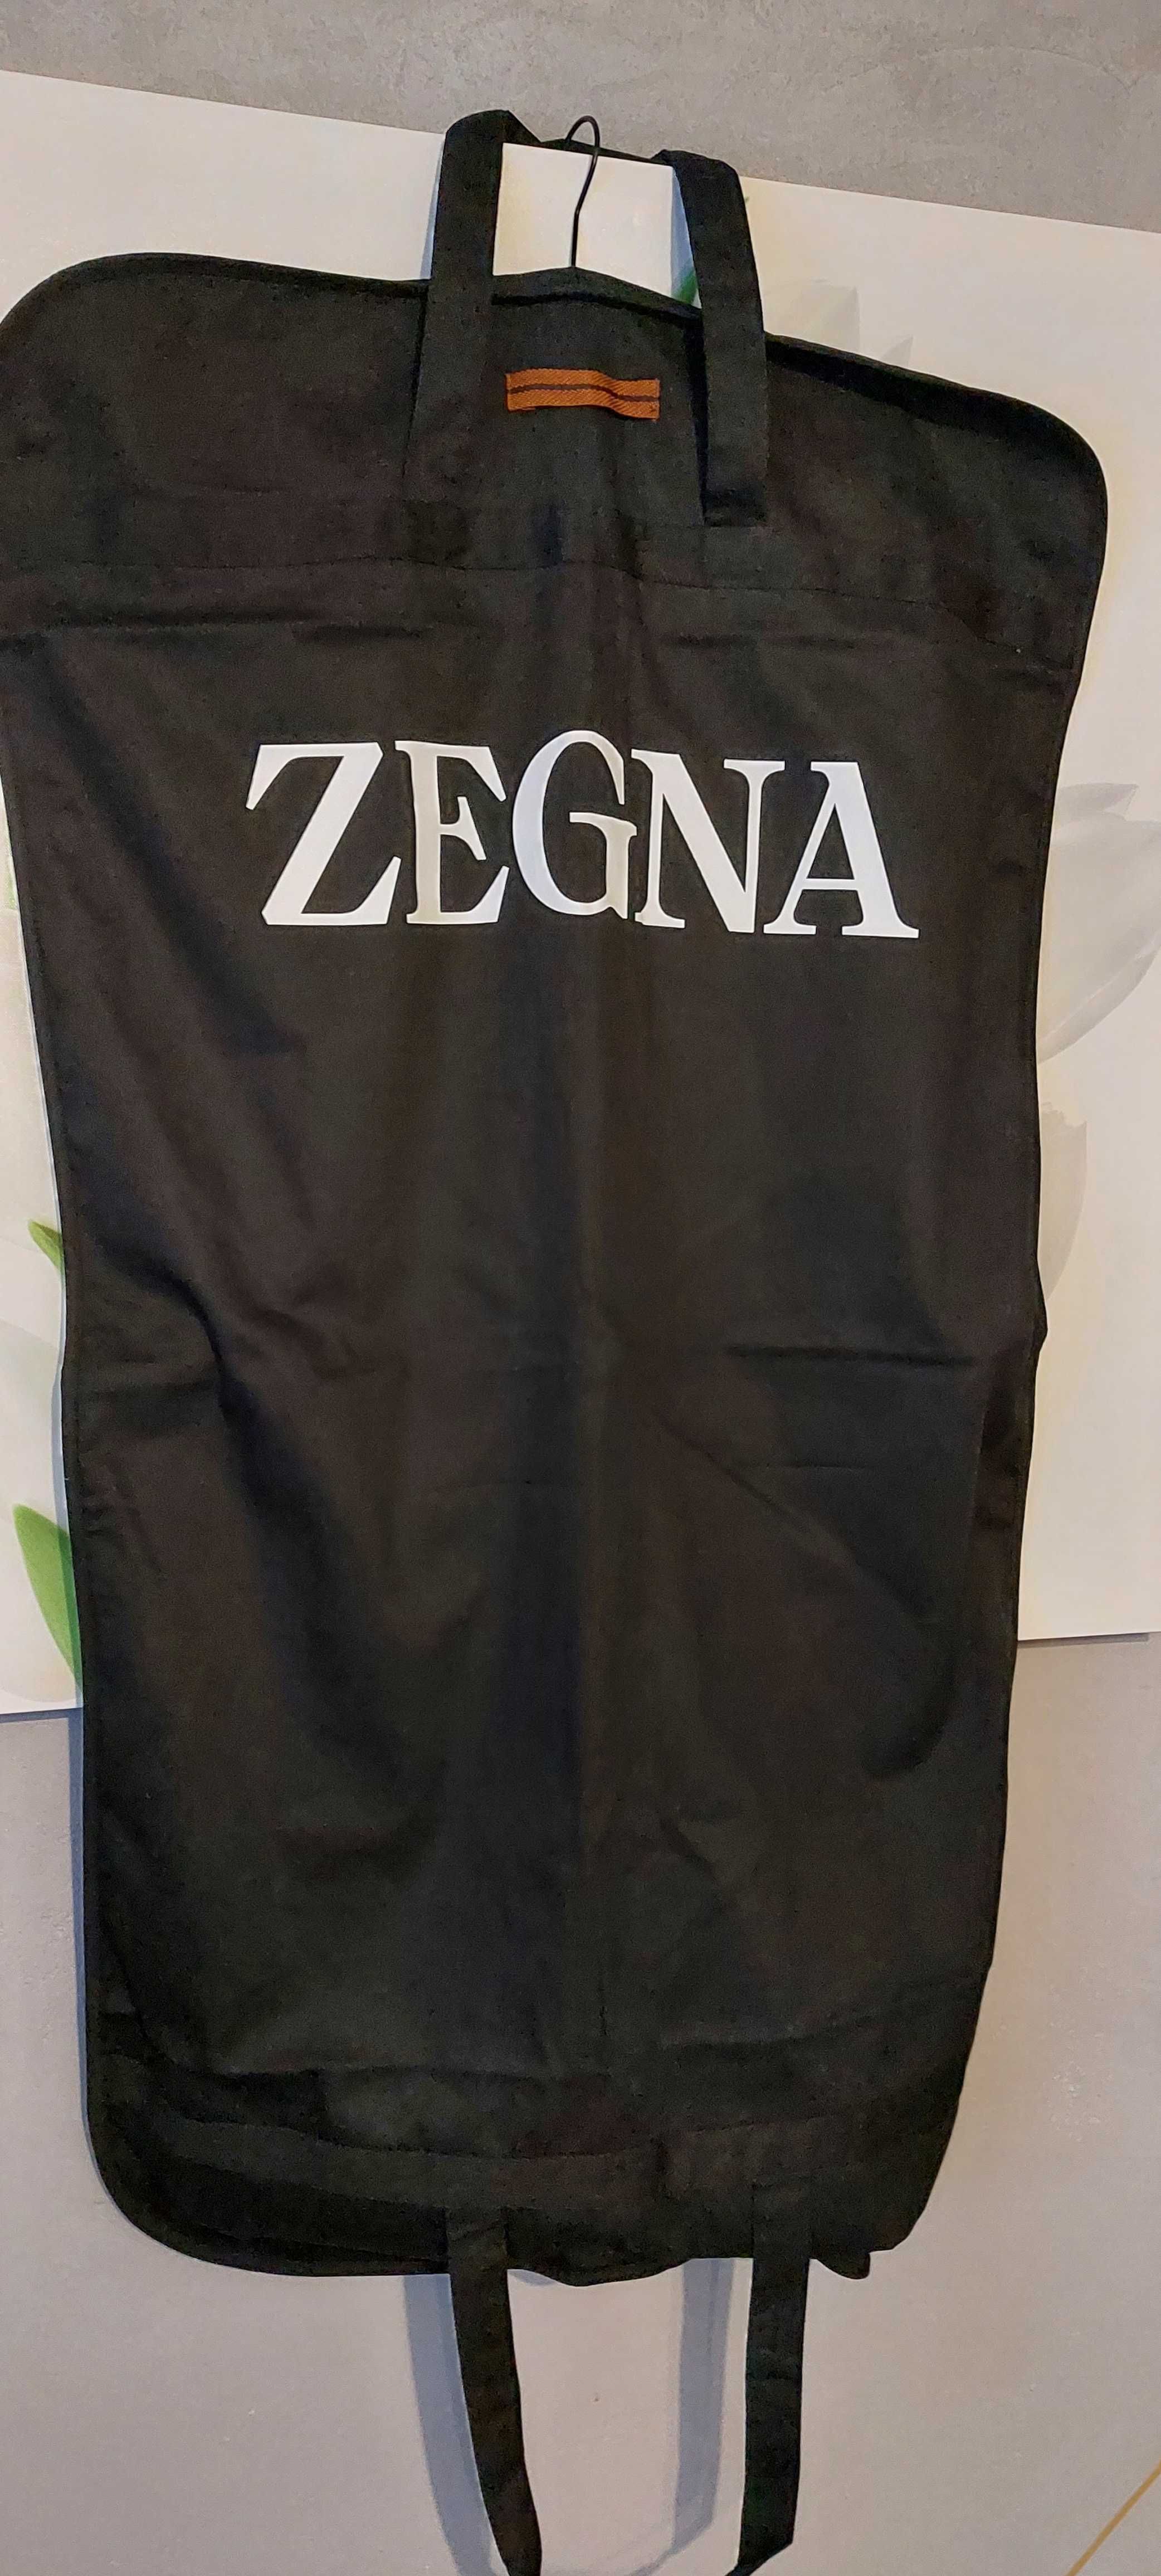 Pokrowiec na ubrania ZEGNA - oryginalny, czarny